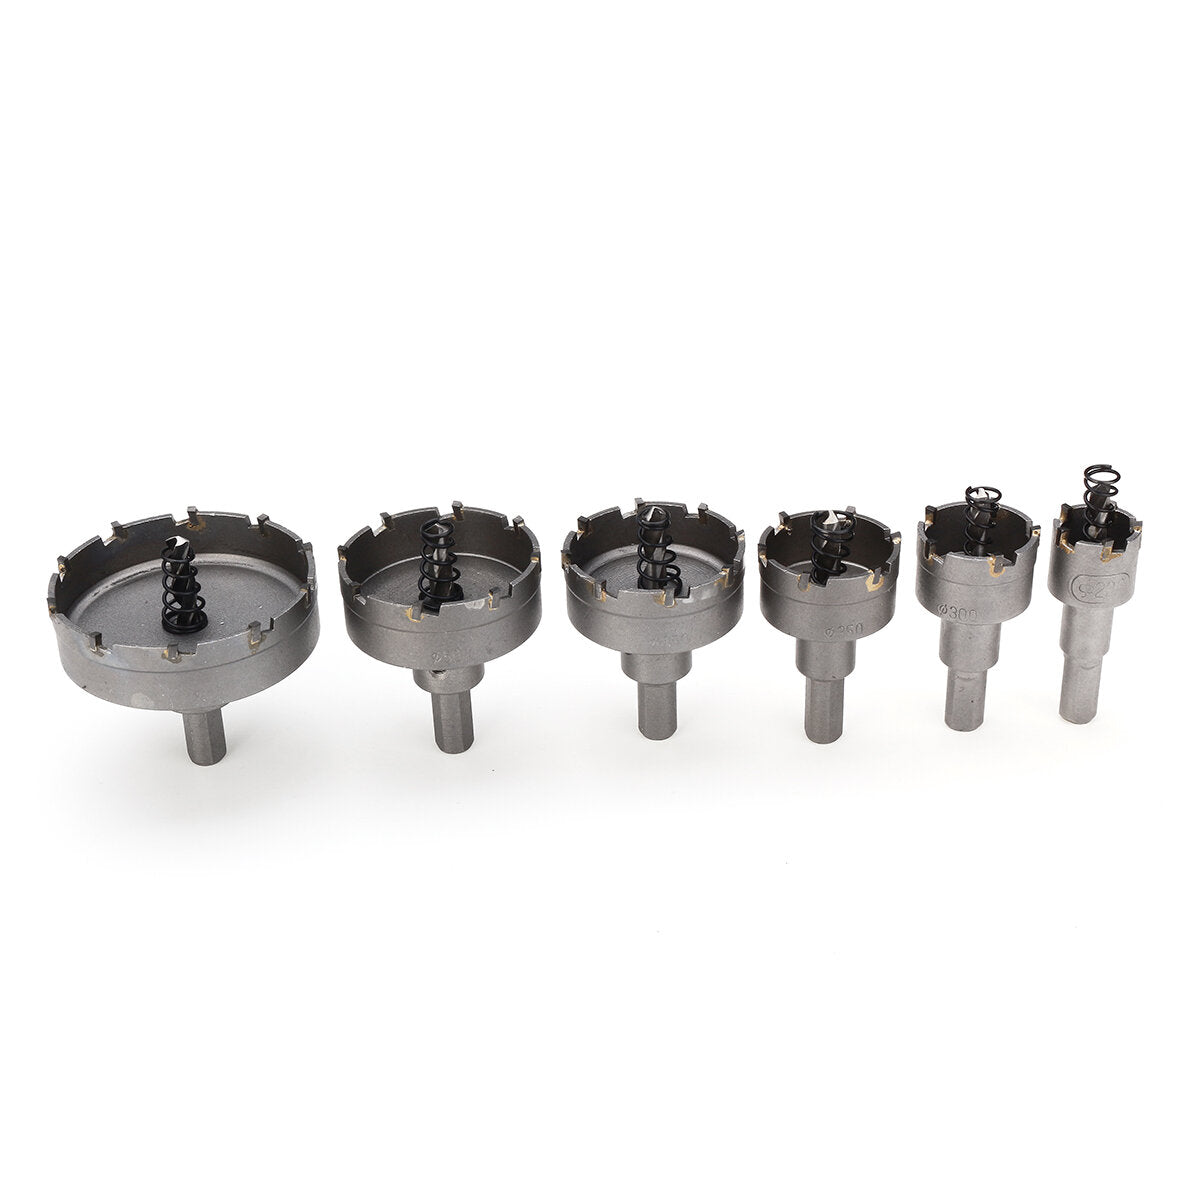 6 stuks 22mm-65mm rvs carbide tip metaallegering boren gatenzaagmachine set: